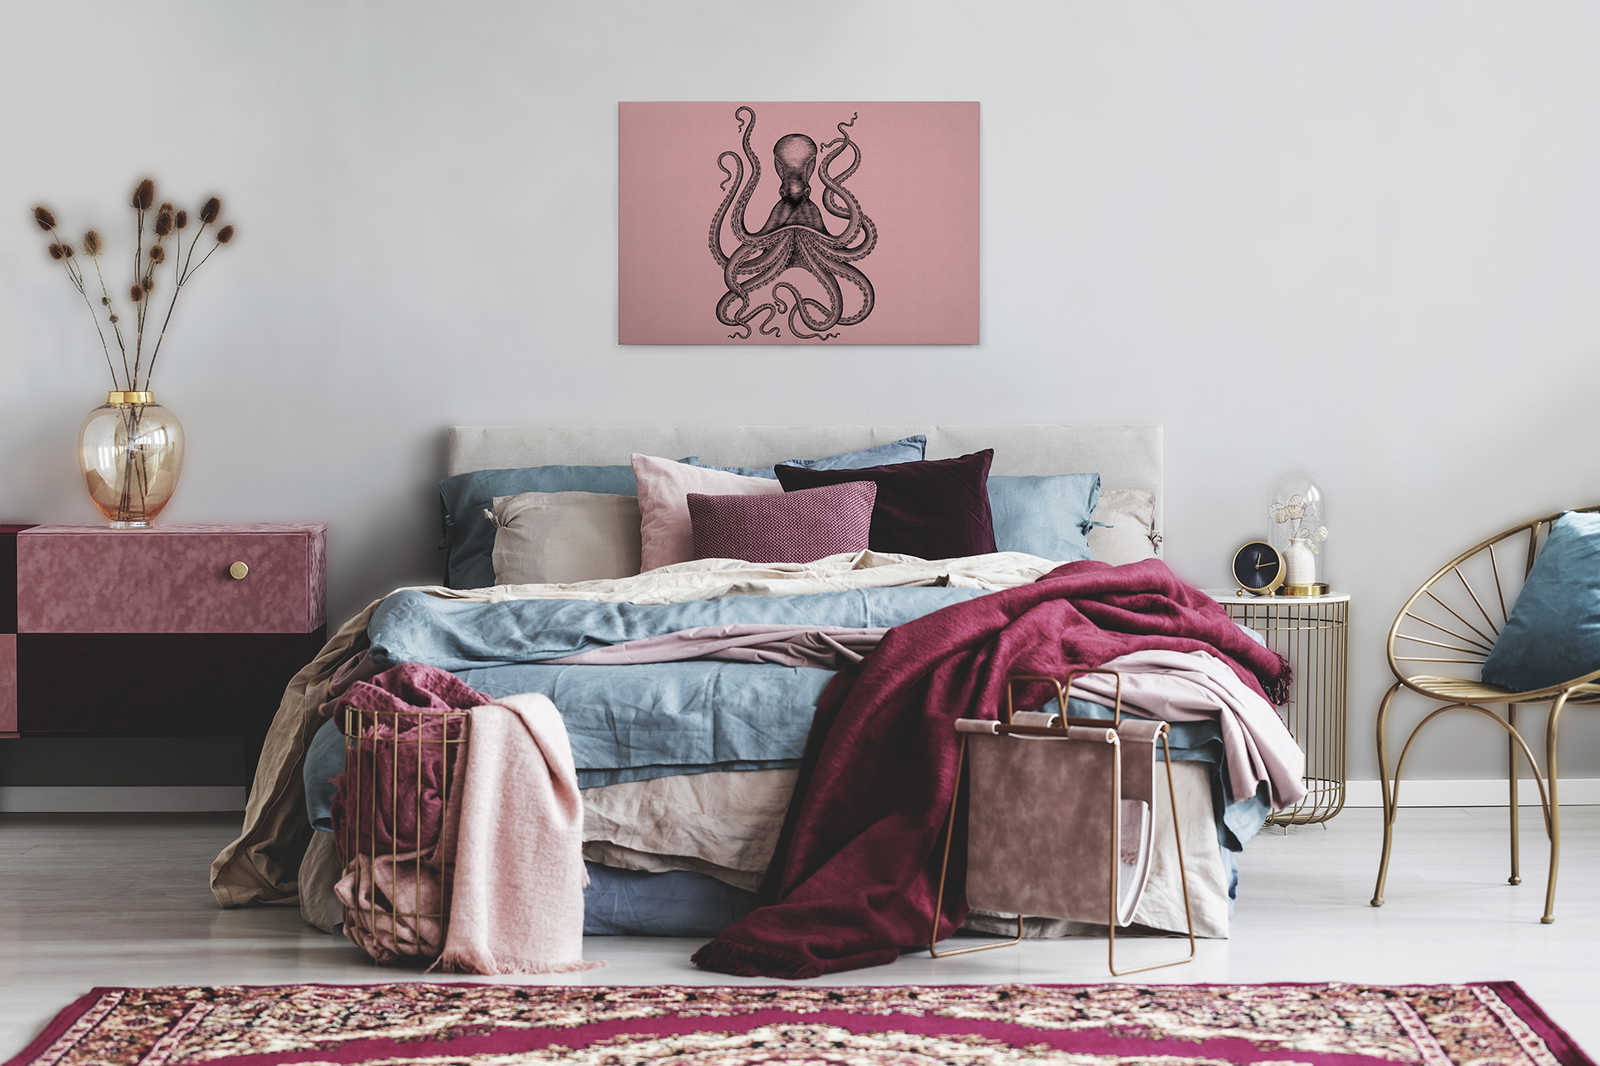             Jules 1 - Leinwandbild mit Kraken im Zeichnung & Retro Stil in Pappe Struktur – 0,90 m x 0,60 m
        